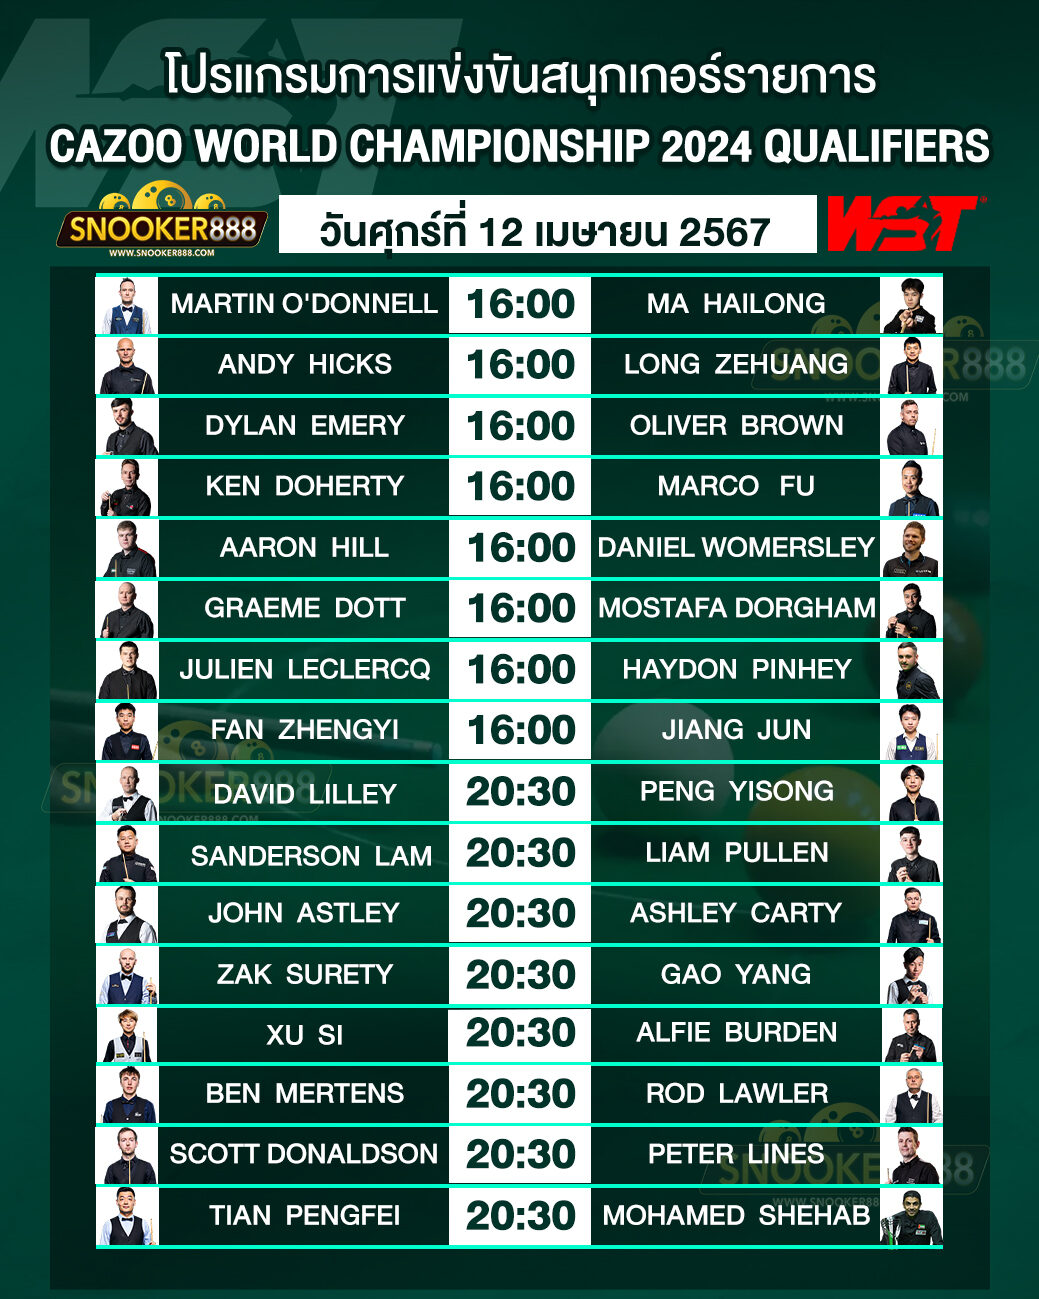 โปรแกรมการแข่งขันสนุกเกอร์ CAZOO WORLD CHAMPIONSHIP 2024 QUALIFIERS วันที่ 12 เม.ย. 67